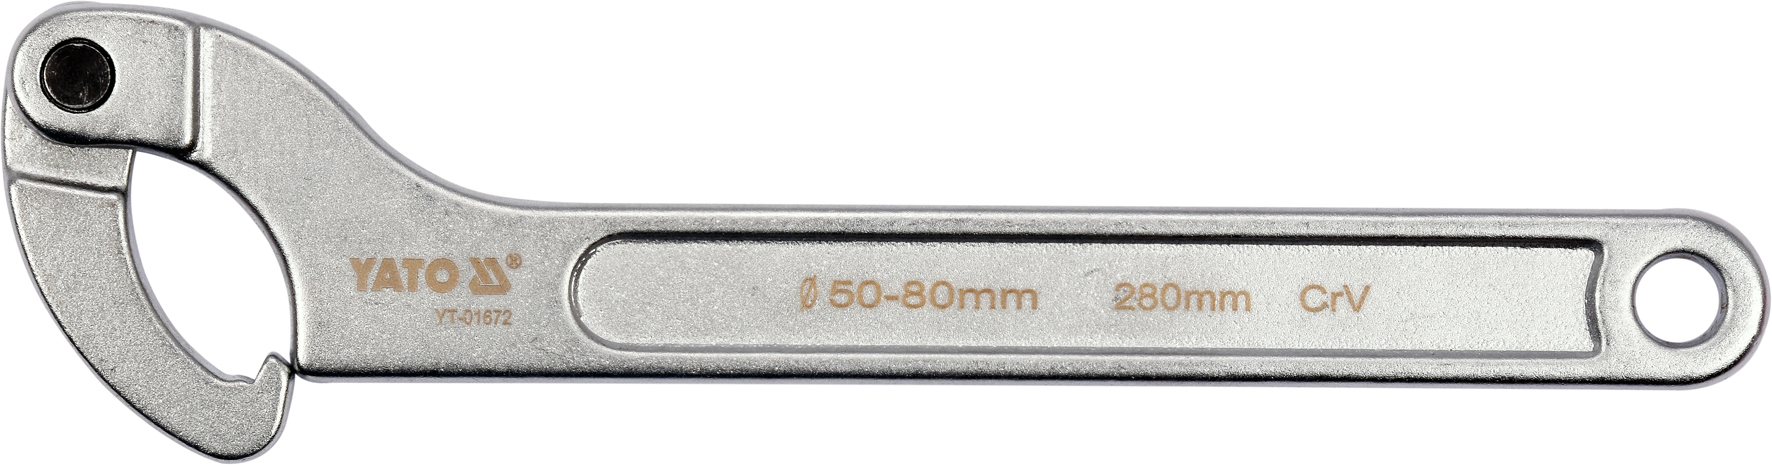 Ключ разводной сегментный шарнирный  50-80mm  YATO YT-01672